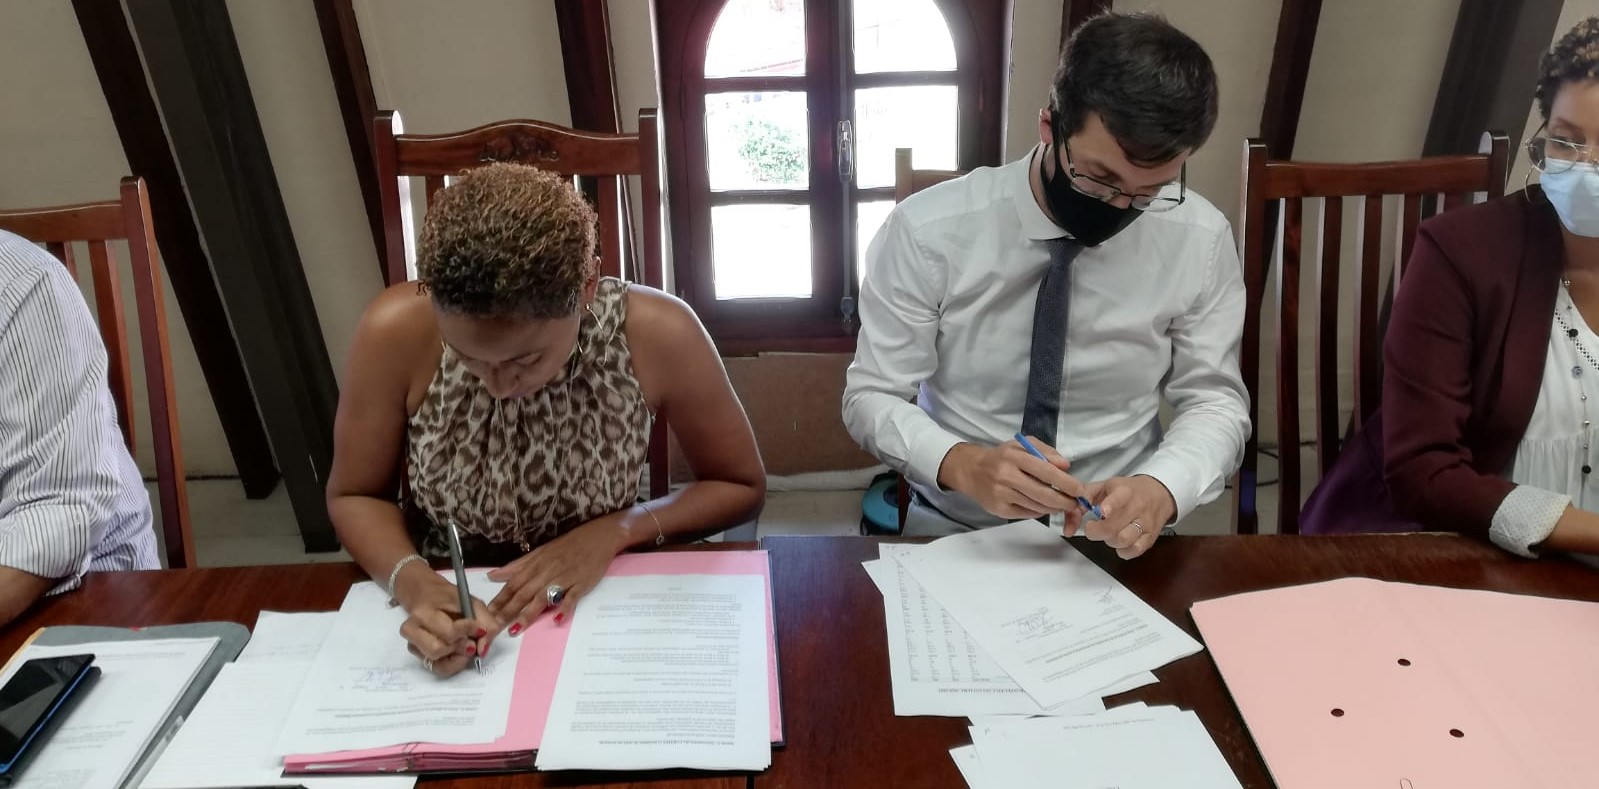     La ville de Ducos signe une convention avec l'Agence française de développement

